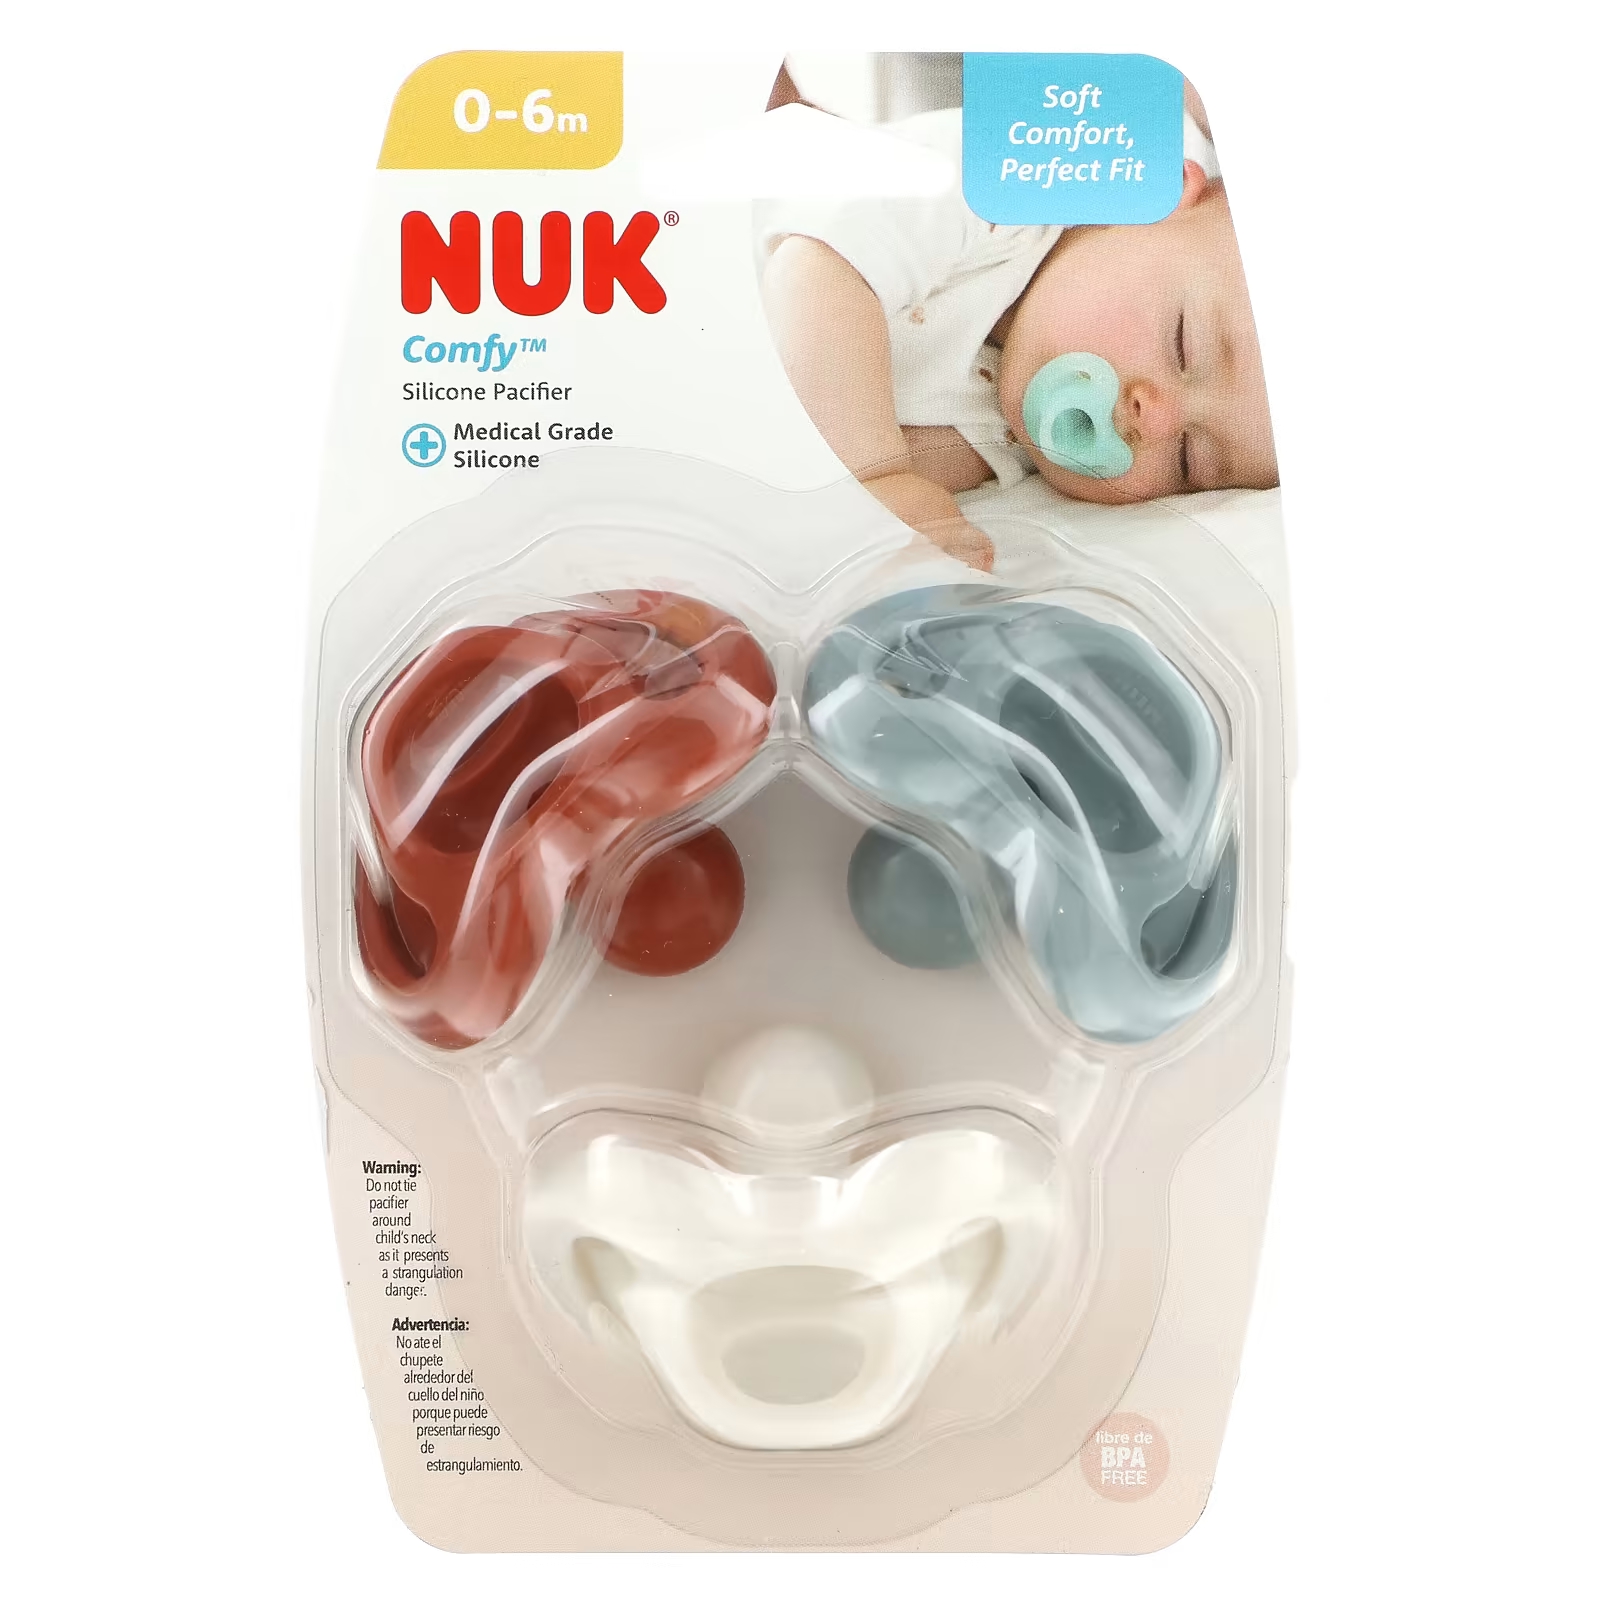 Соска силиконовая Nuk для детей 0–6 месяцев, цвета землистого цвета.